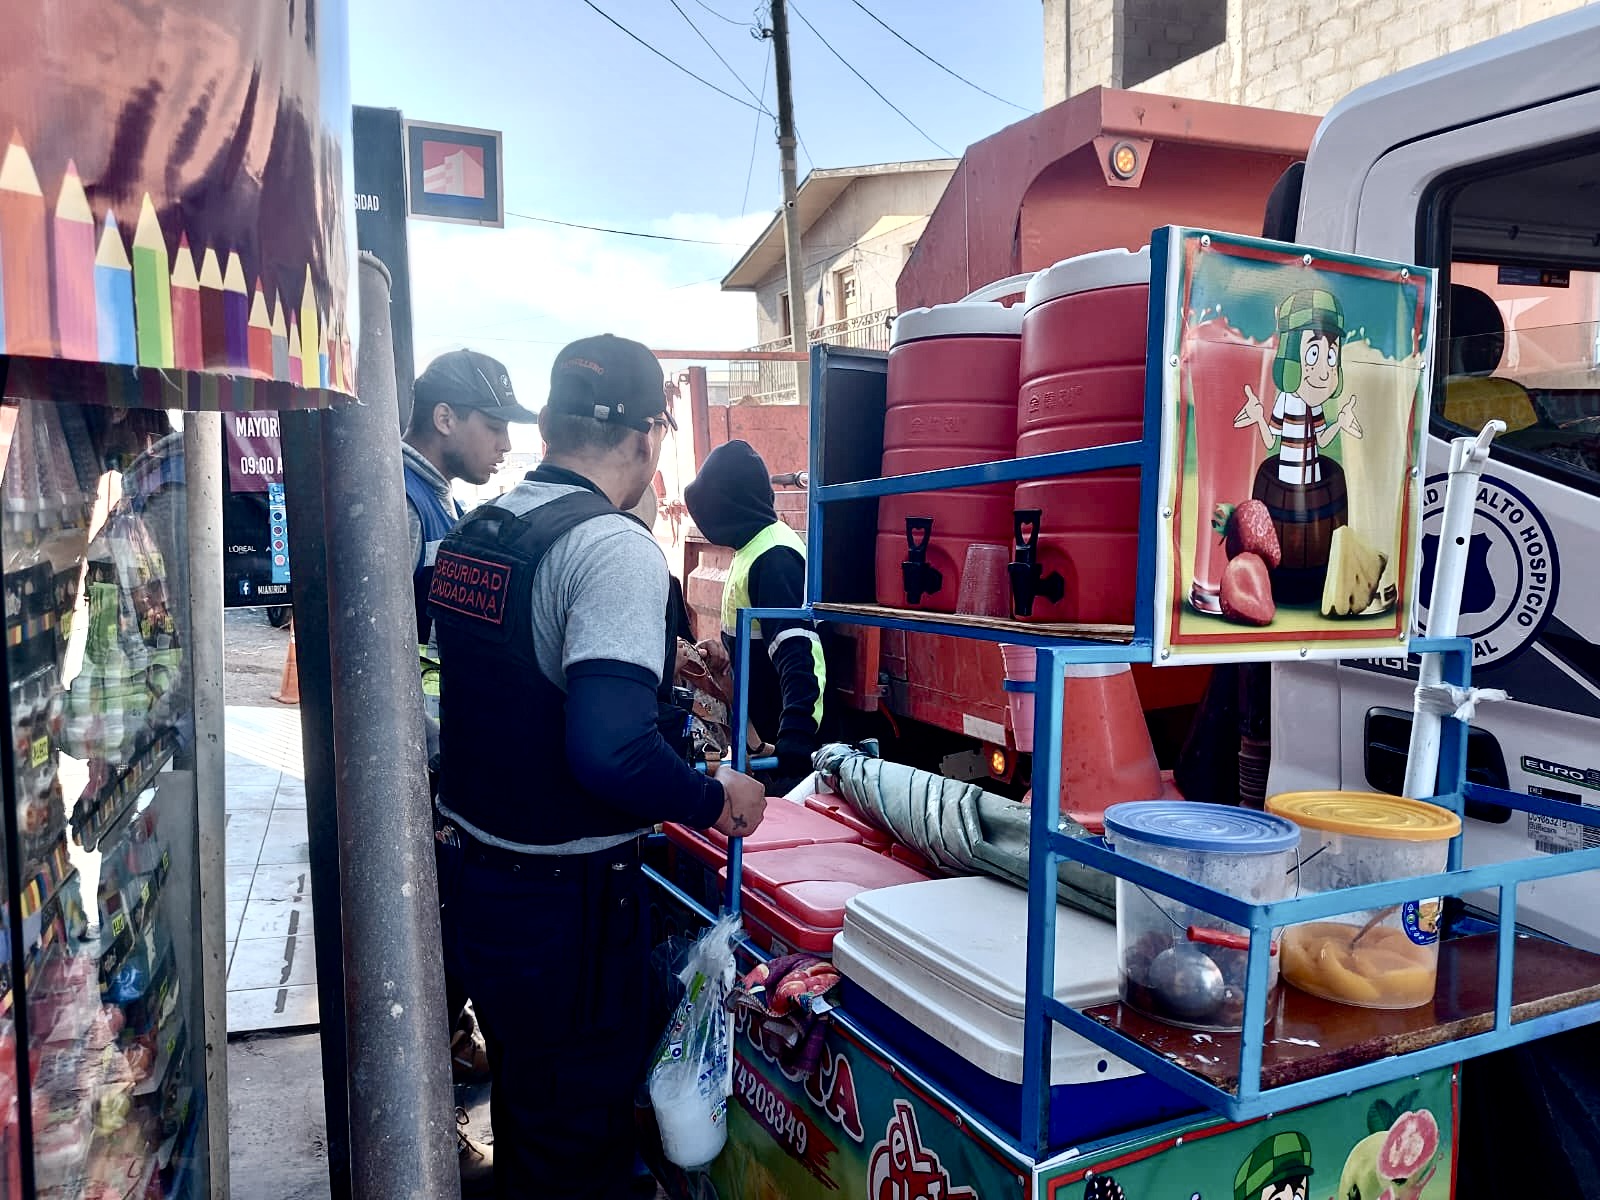 Carros con jugos y salchipapas decomisan en fiscalización al comercio irregular en Alto Hospicio